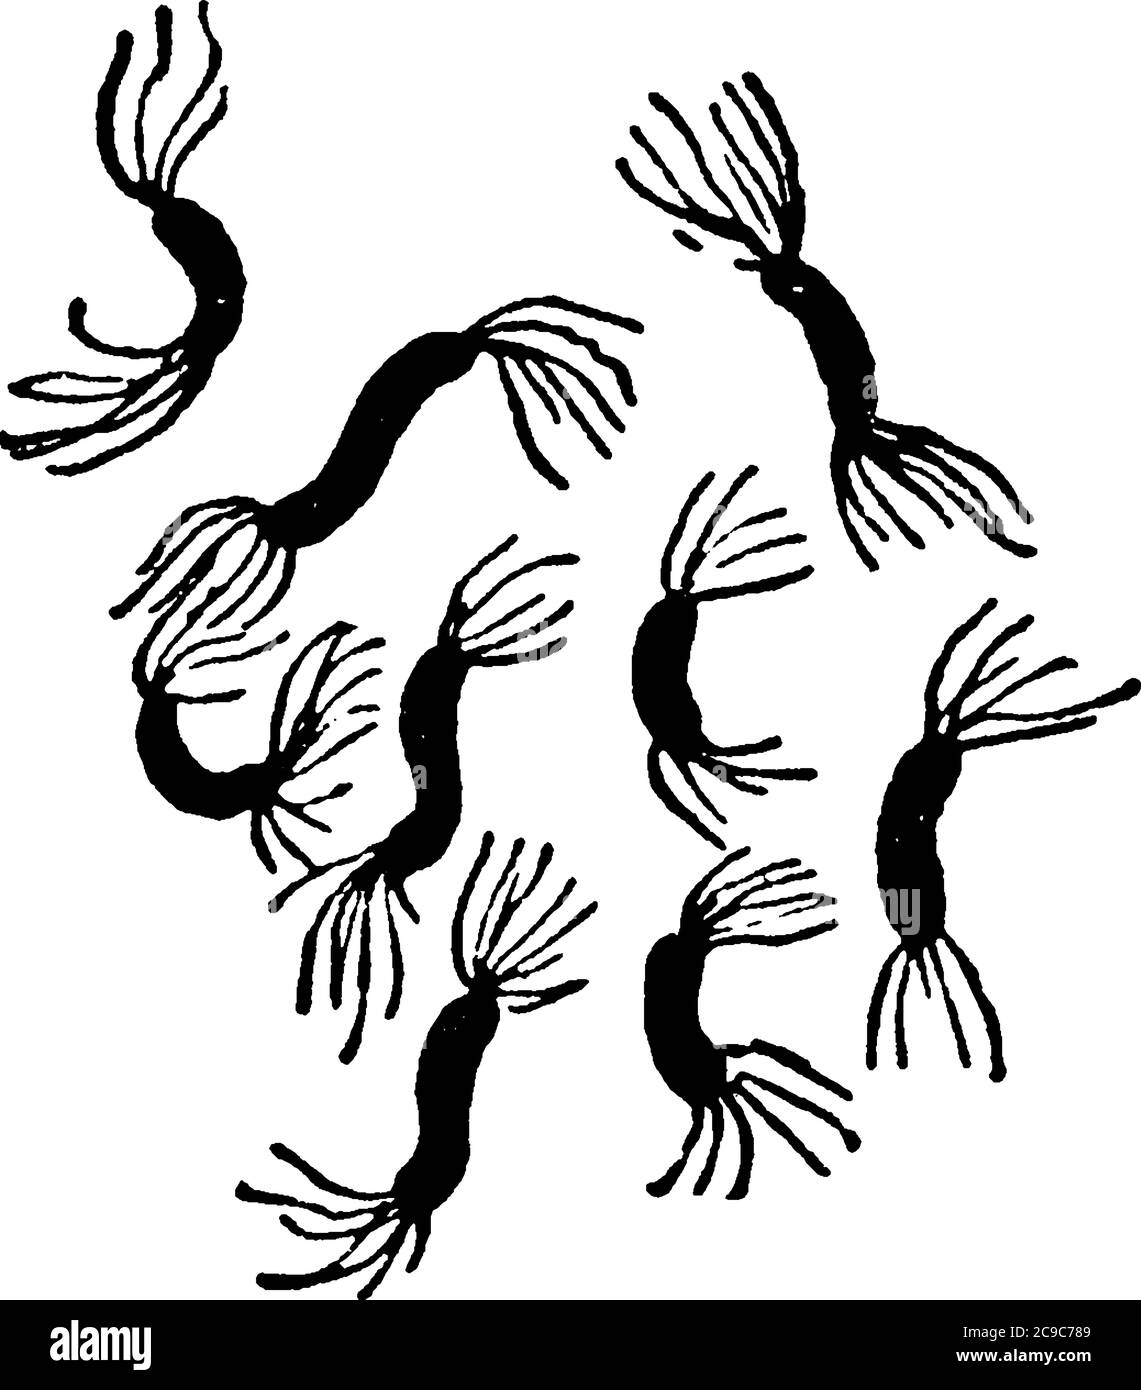 Una rappresentazione tipica dei batteri molli e a spirale, Spirillum rubrum, Esmarsch, una forma di batteri che mostrano cilia e loro arrangiamento Illustrazione Vettoriale